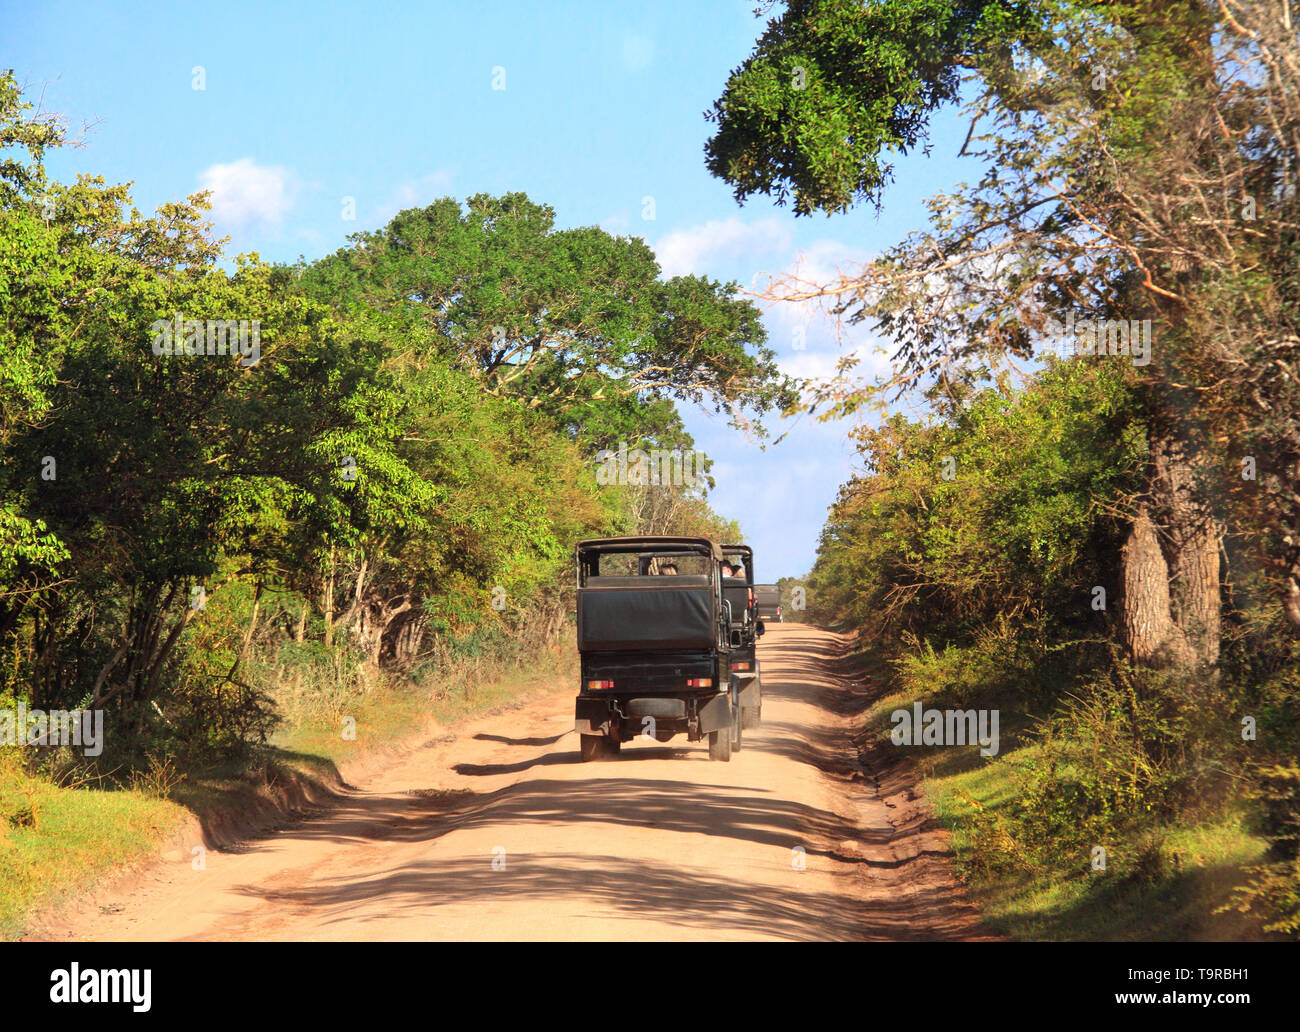 Location de safari dans le parc national de Yala. Les touristes dans les voitures sur la route poussiéreuse. Sri Lanka Banque D'Images